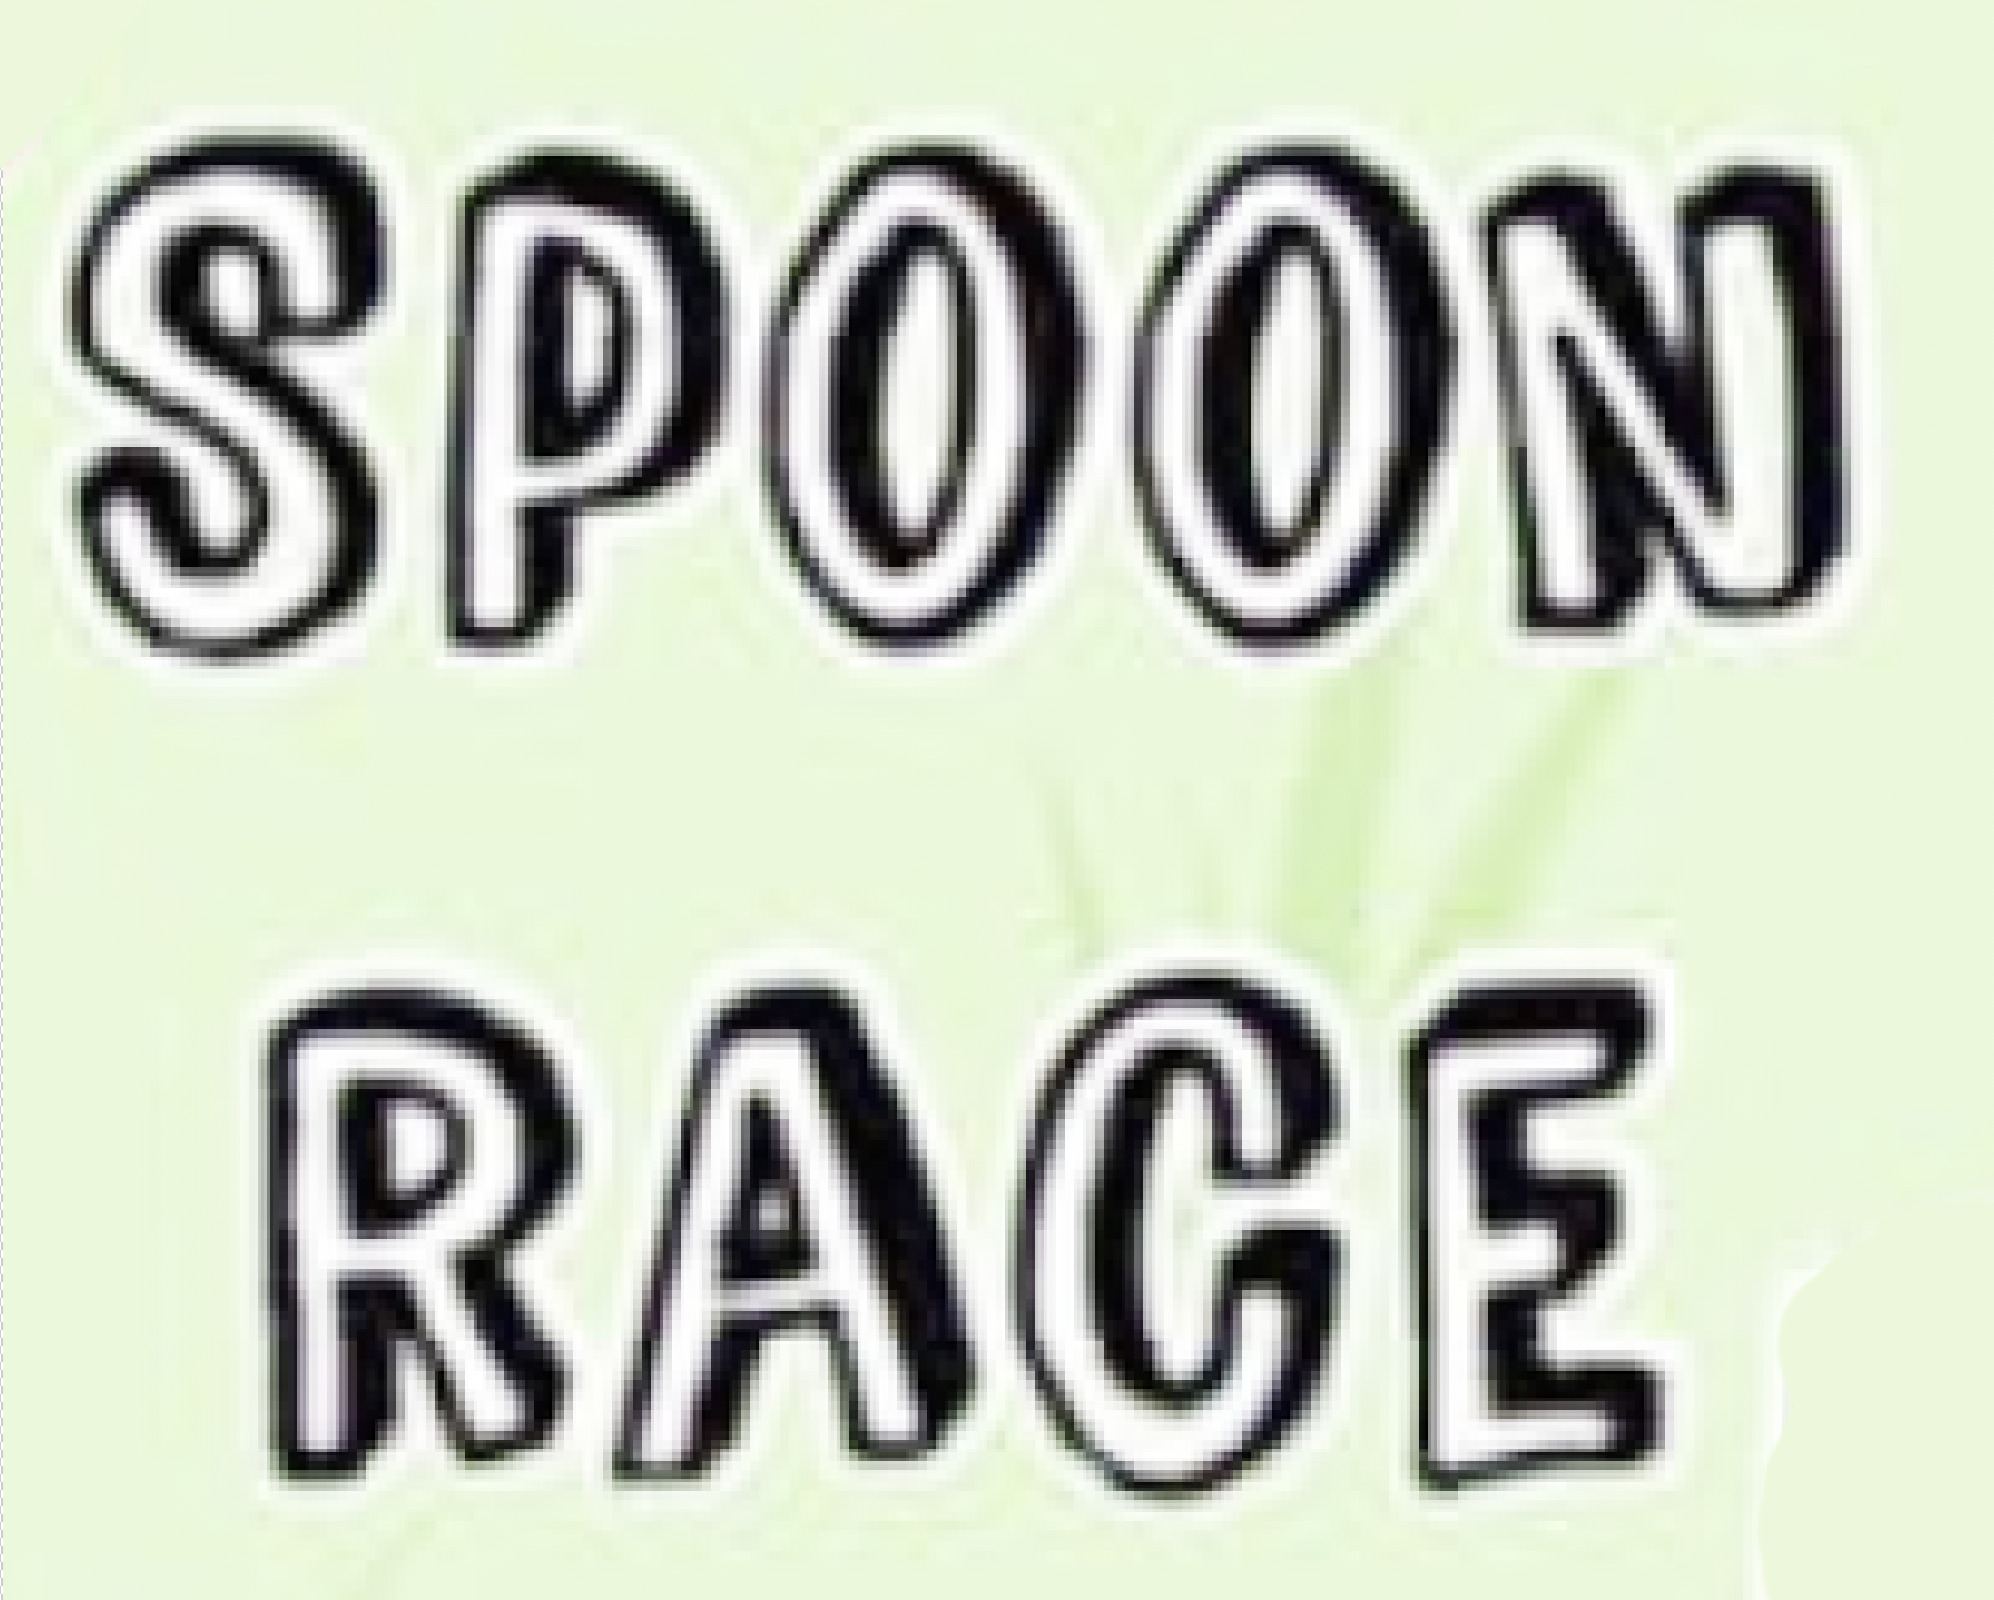 Spoon Race